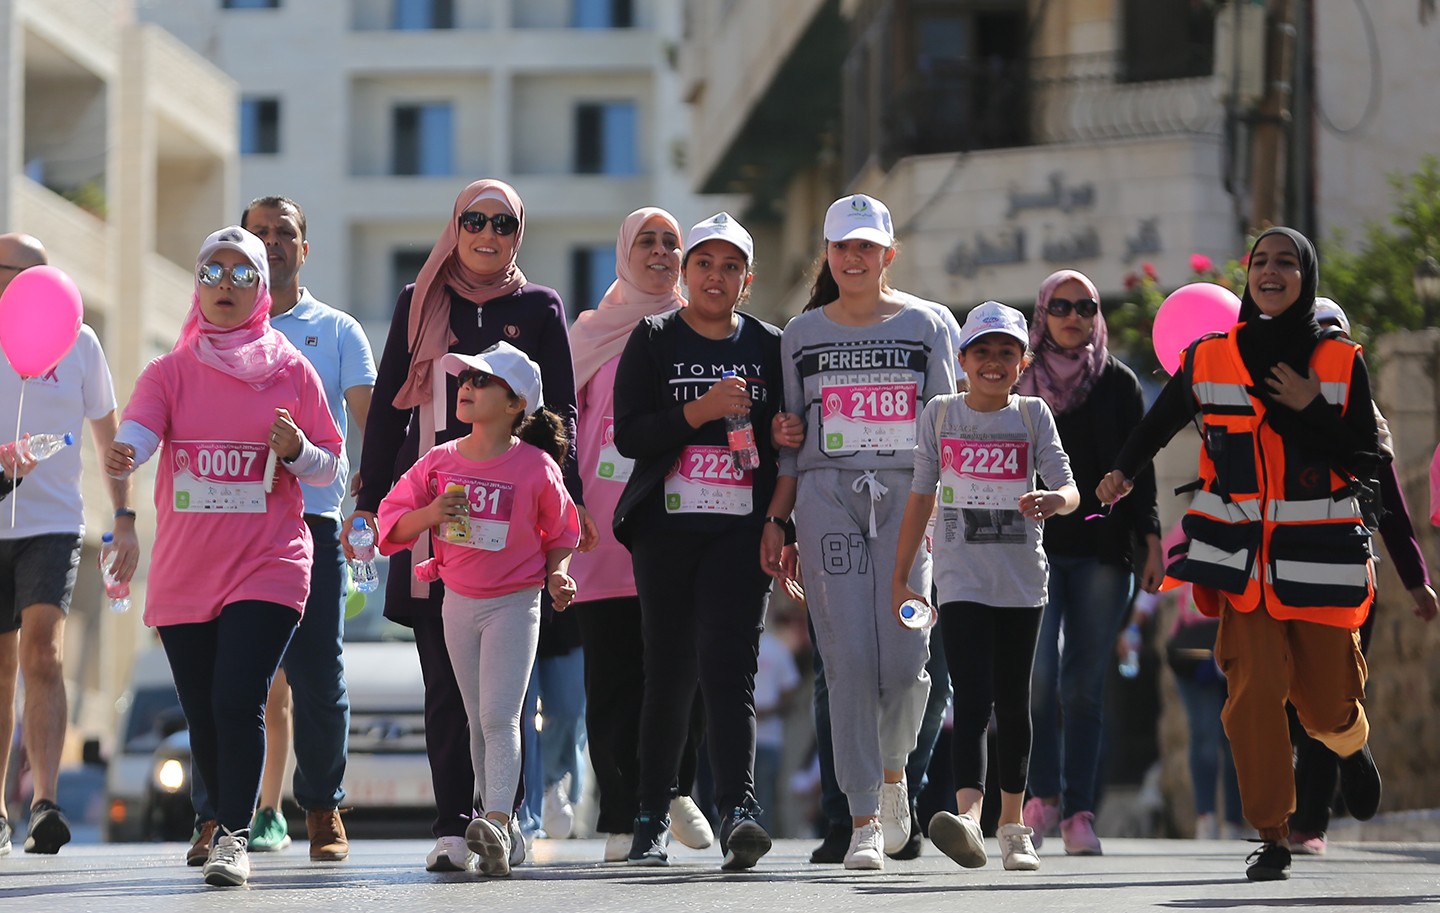 سباق اليوم الوردي النسائي رام الله ‫(38470148)‬ ‫‬.jpg